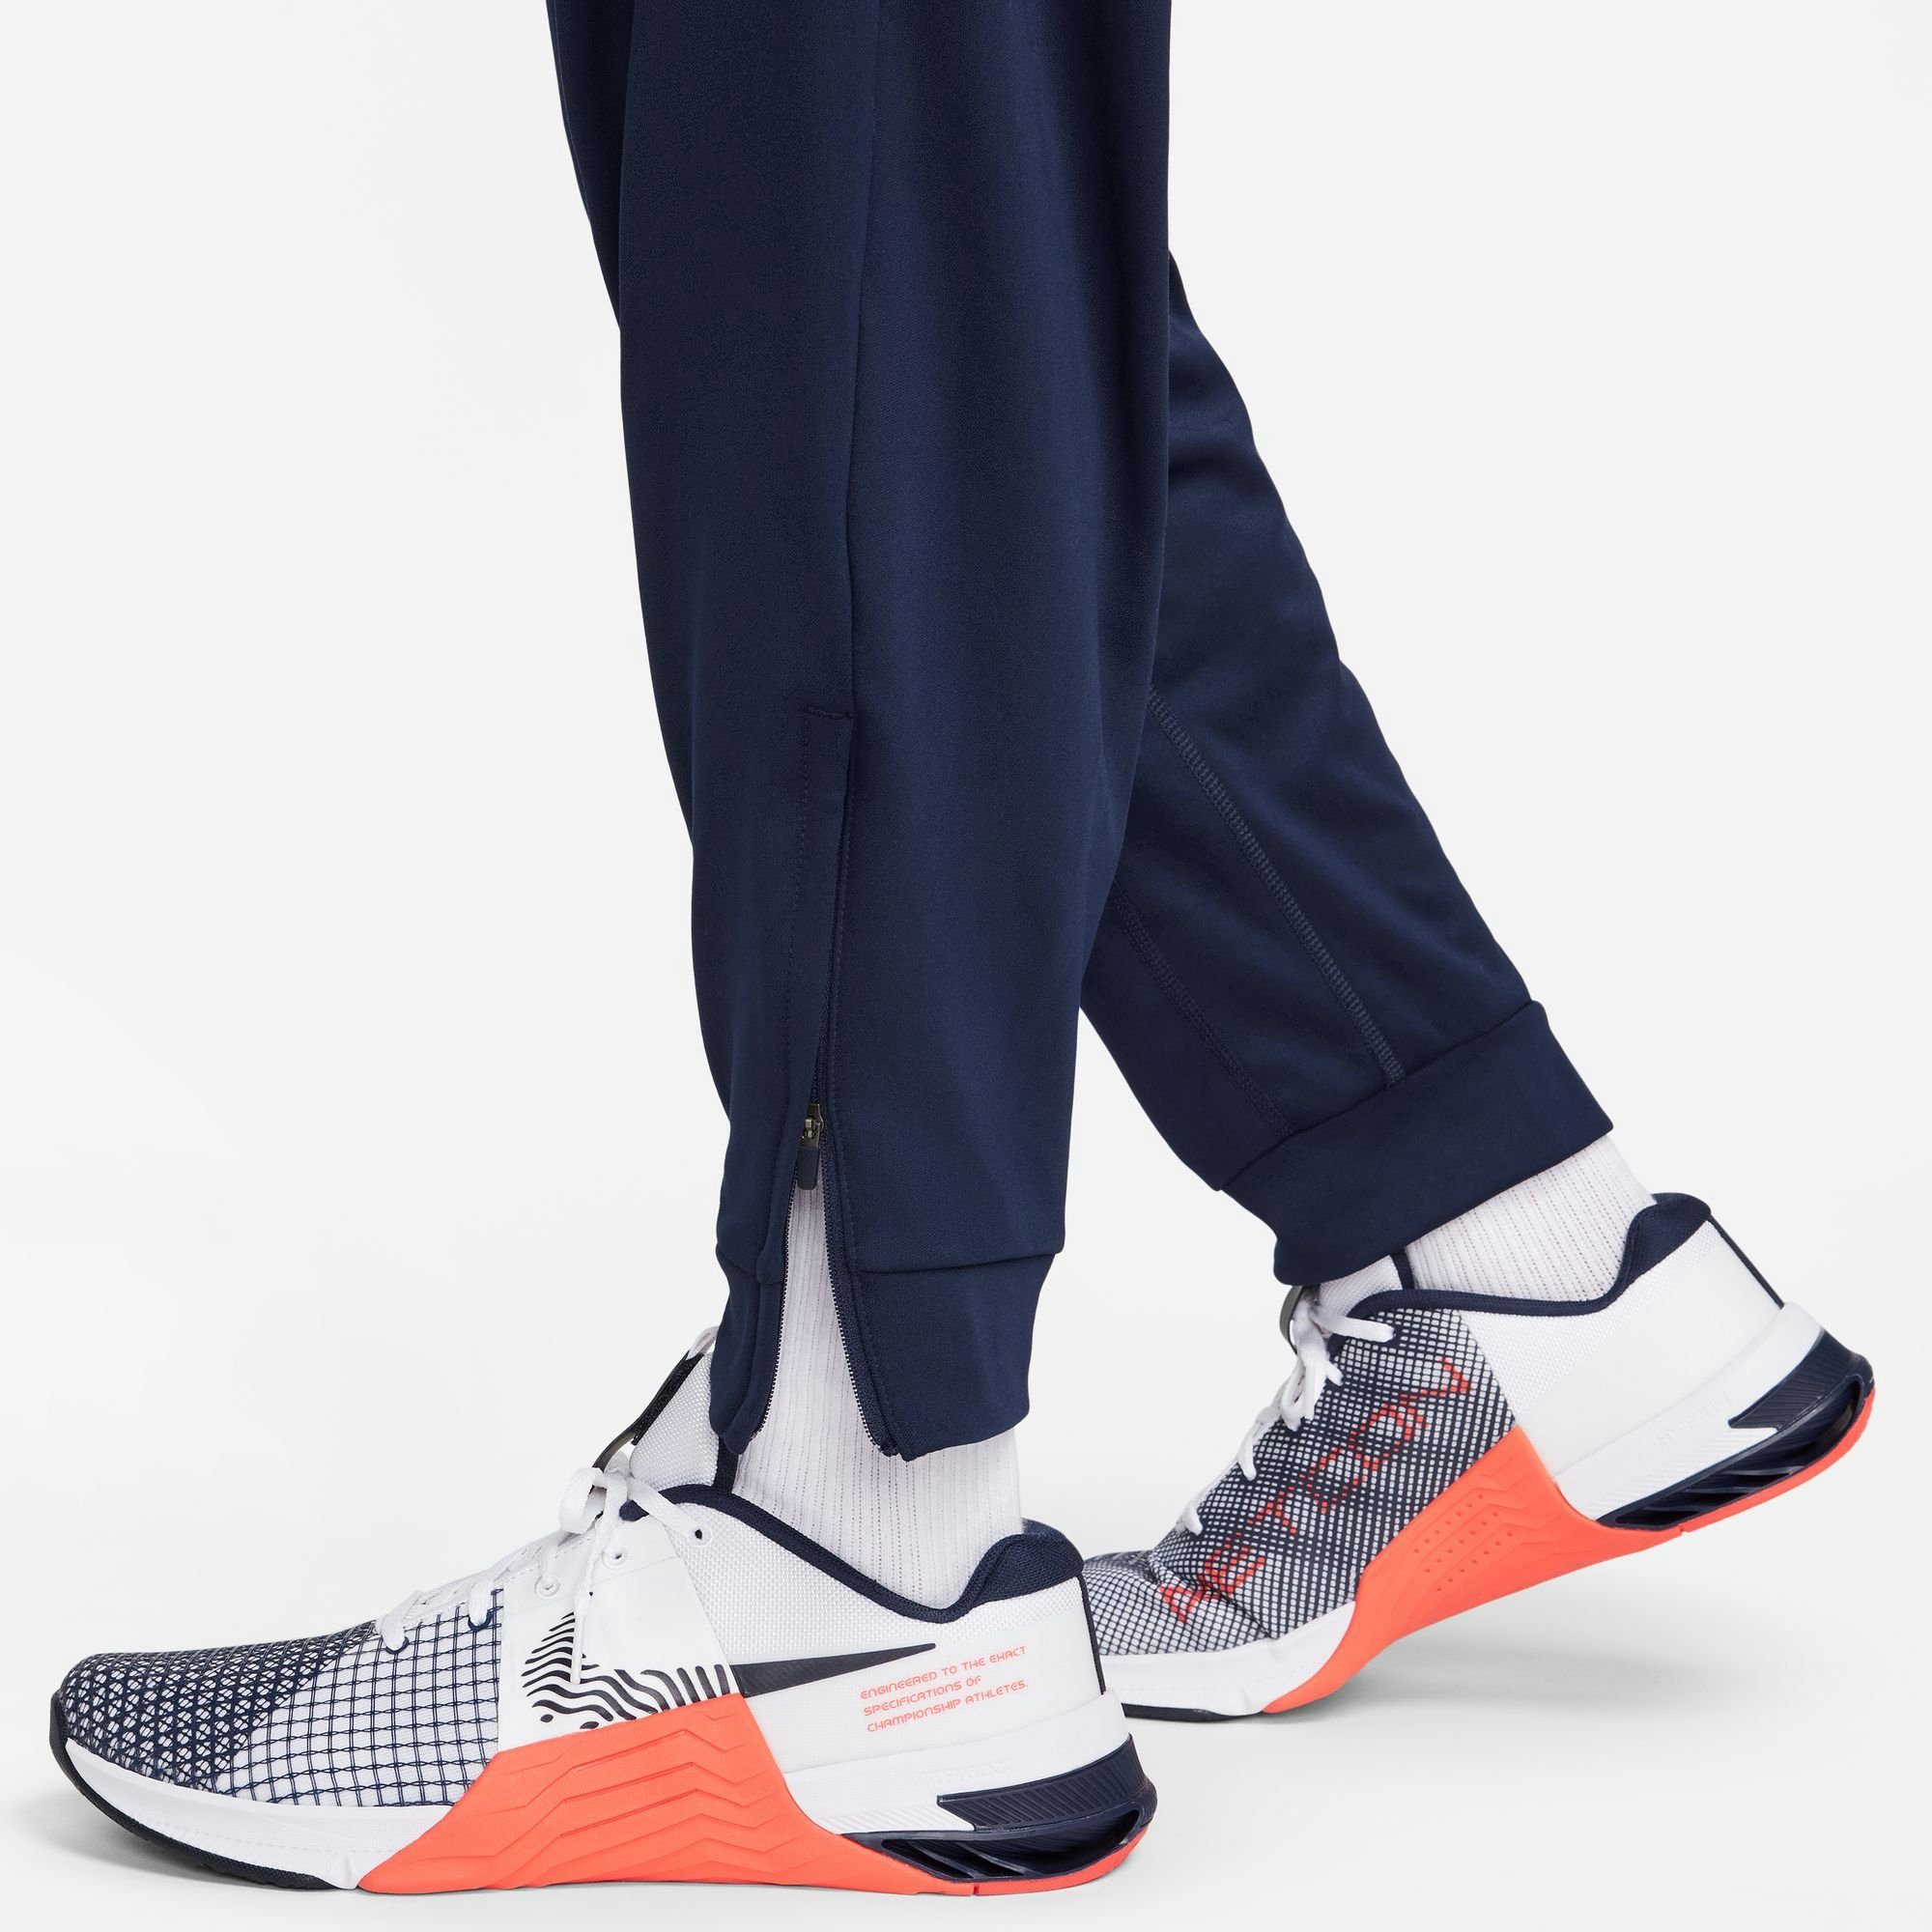 Nike Trainingshose MEN'S FITNESS PANTS DRI-FIT TAPERED OBSIDIAN/BLACK TOTALITY